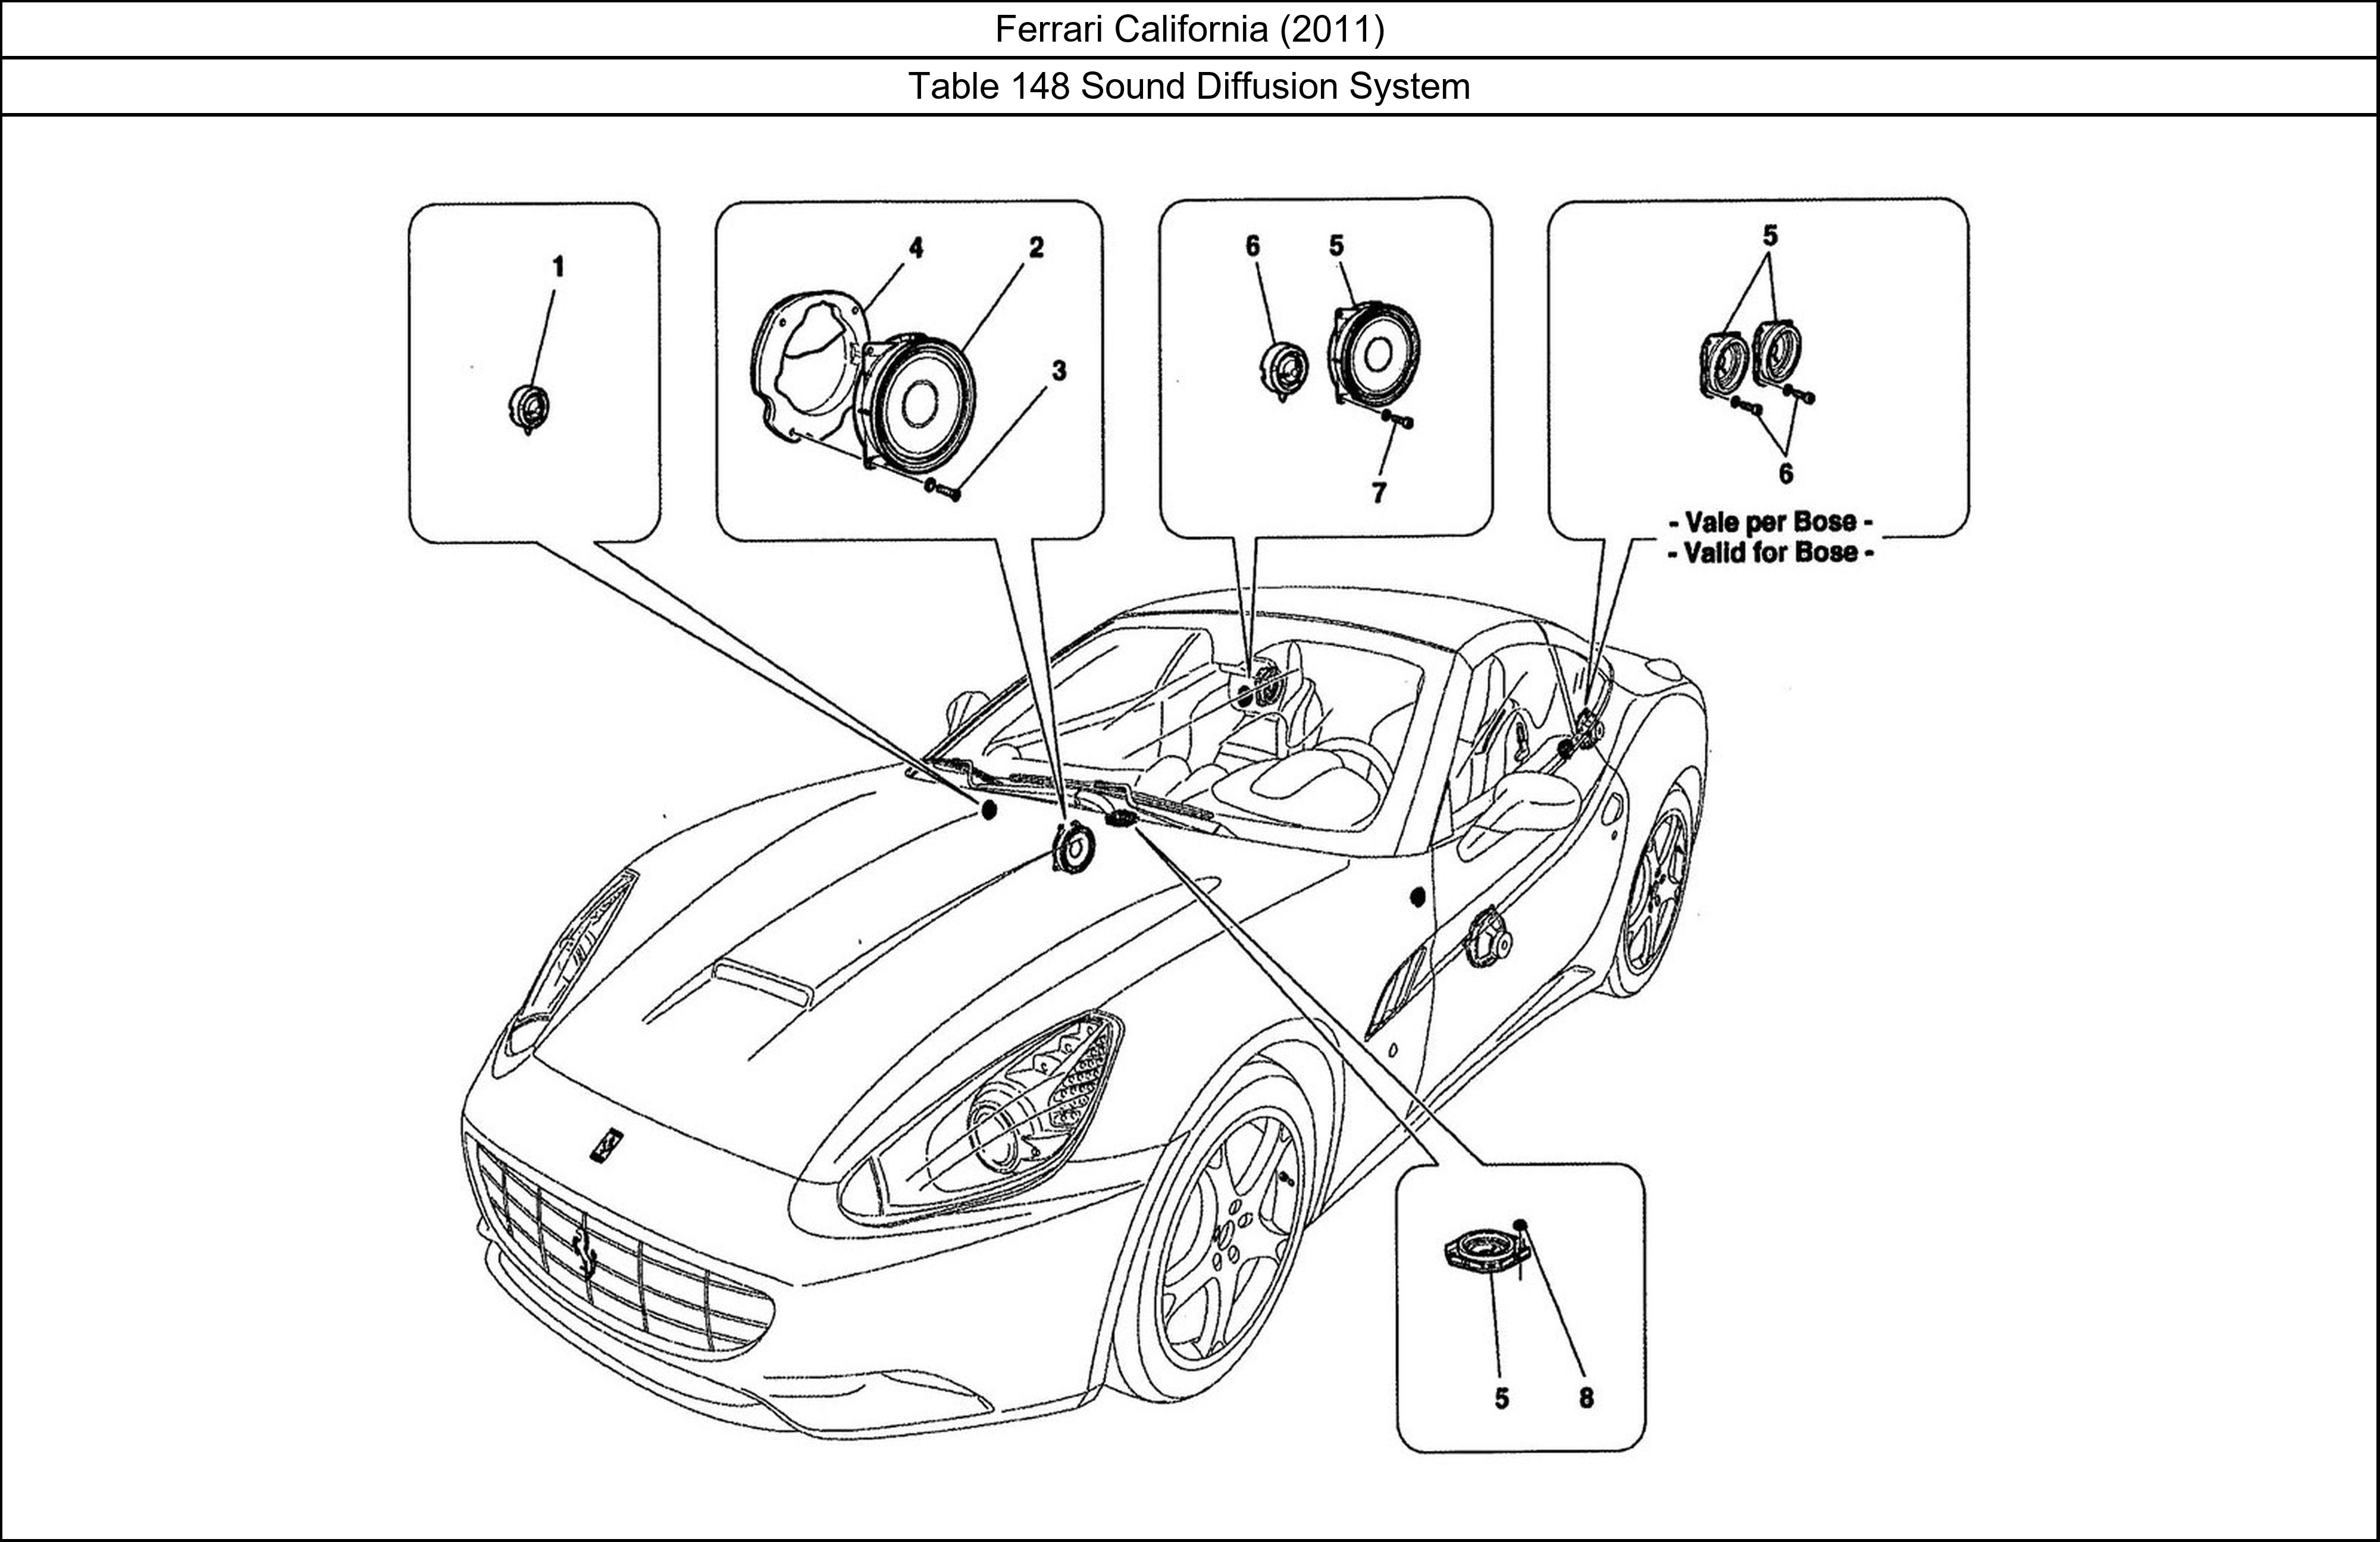 Ferrari Parts Ferrari California (2011) Table 148 Sound Diffusion System